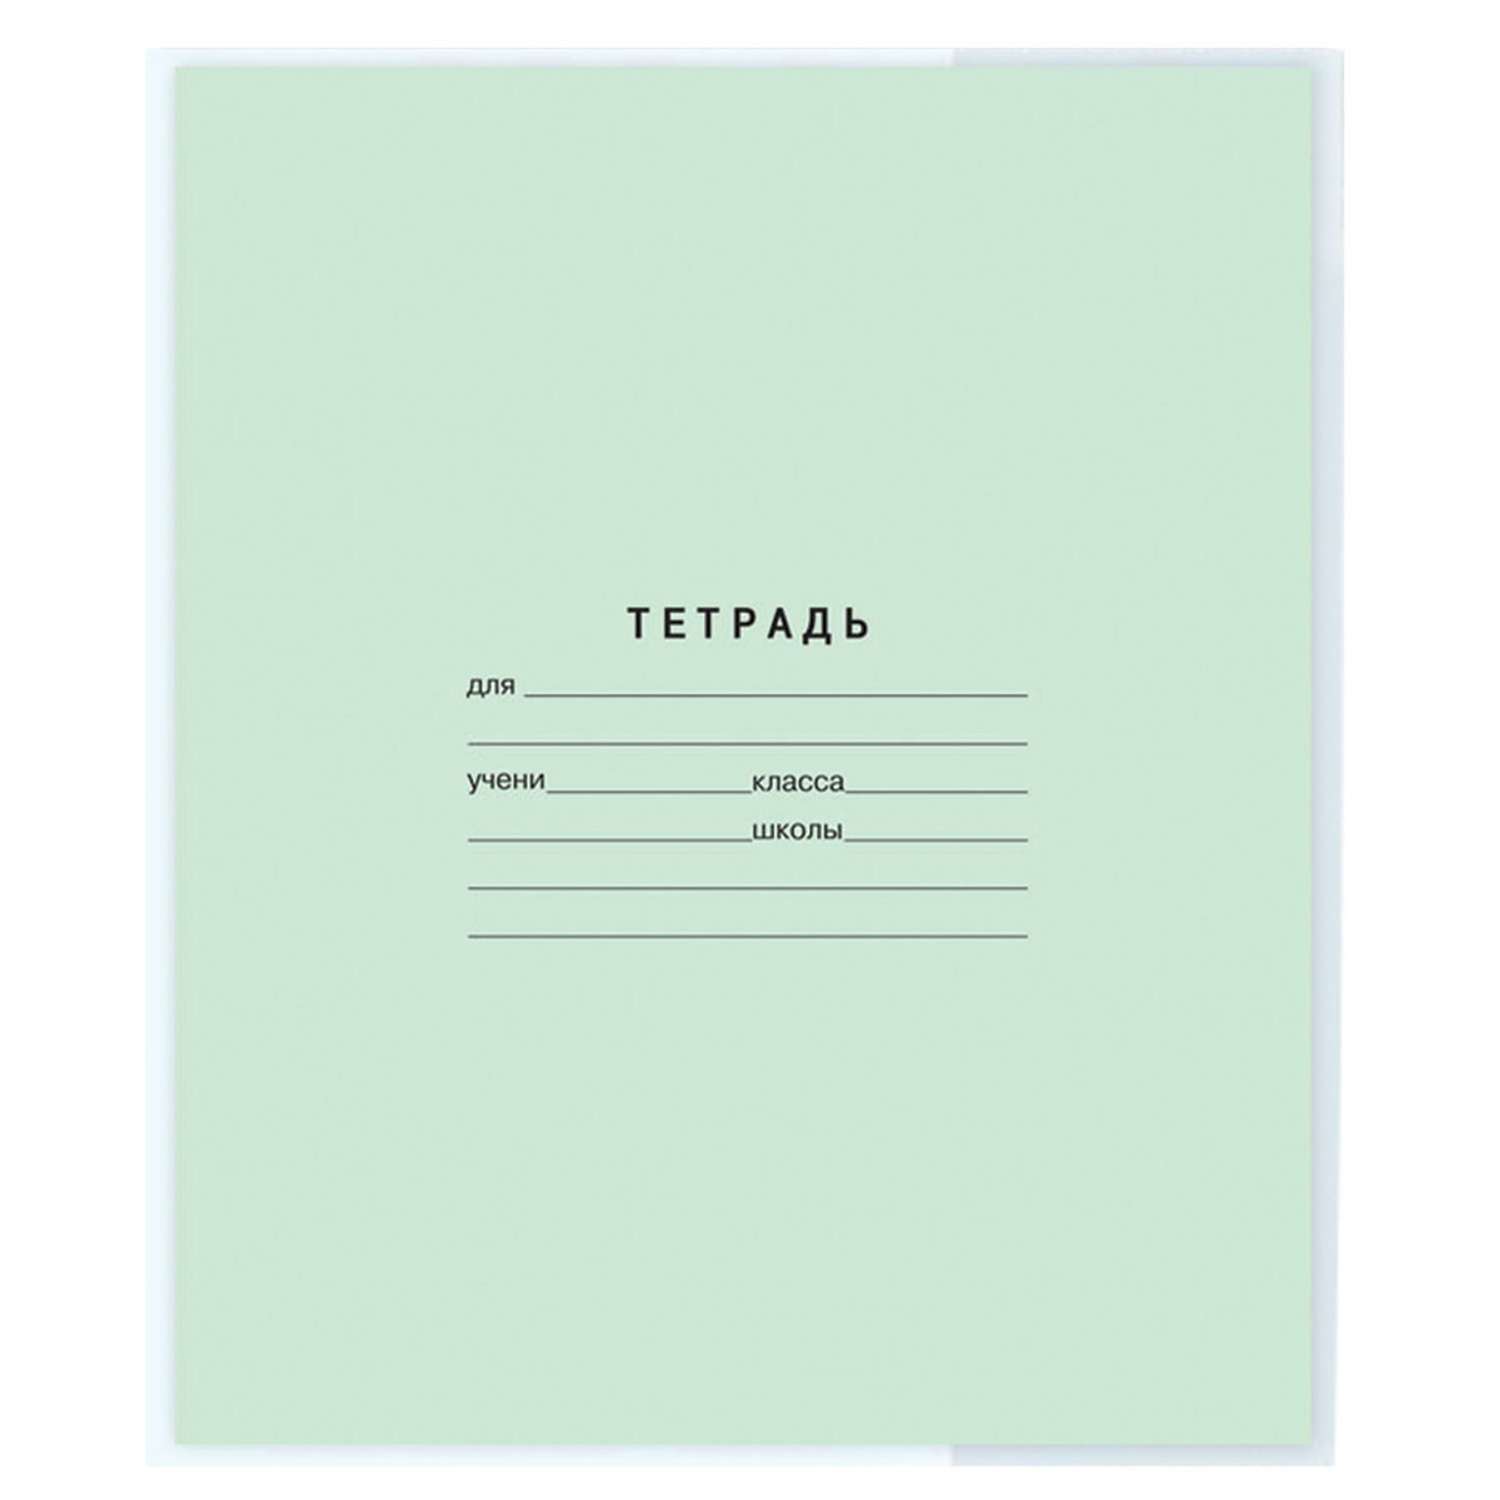 Обложки Пифагор для тетради и дневника 20шт прозрачные - фото 10